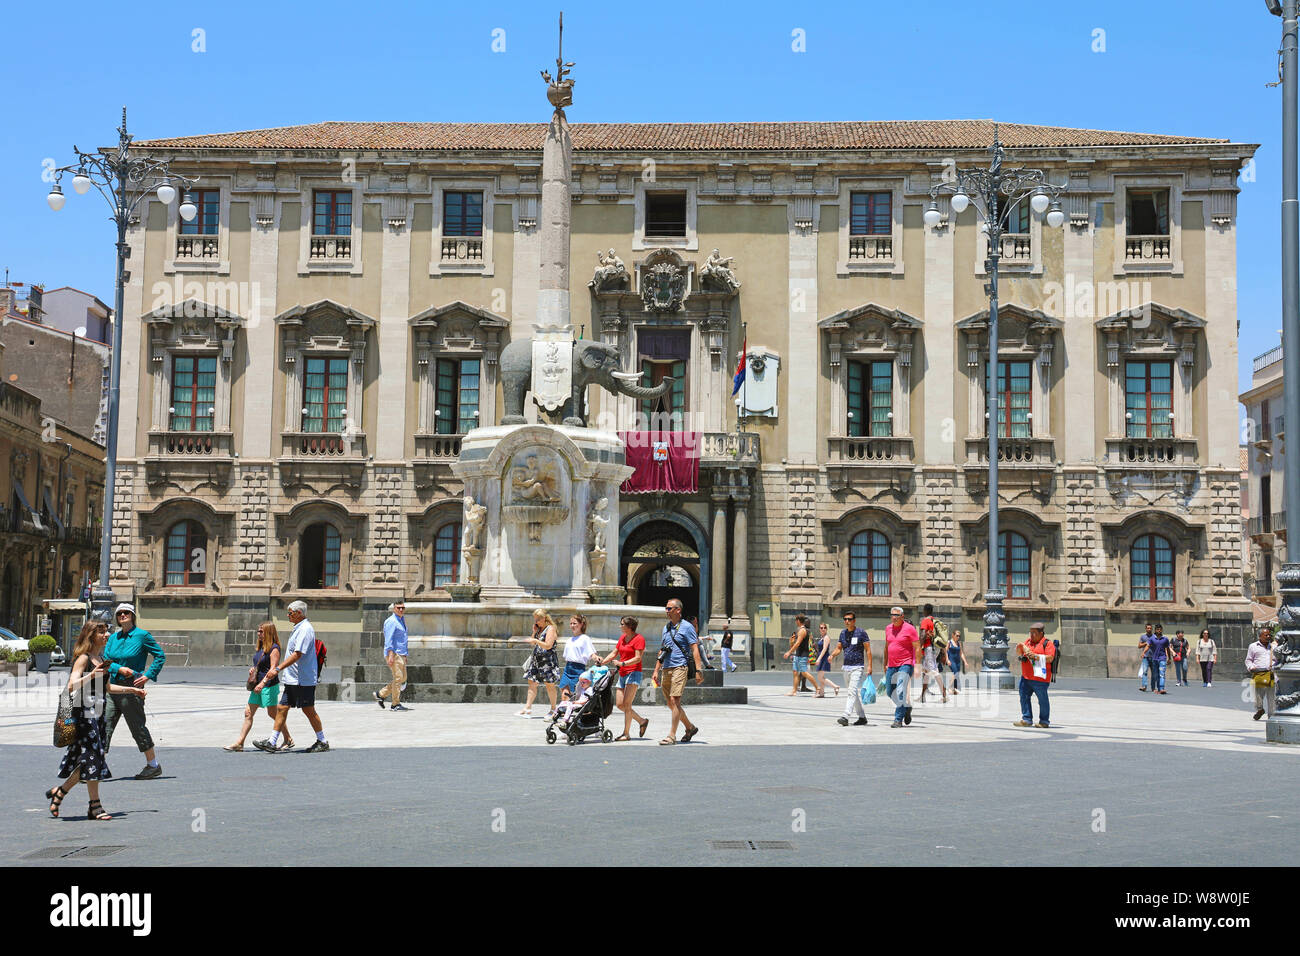 CATANIA, Sizilien - 19. JUNI 2019: Touristen in Piazza del Duomo mit dem elefantenbrunnen Obelisk und der Stadt Halle Palast im Hintergrund, Ca Stockfoto